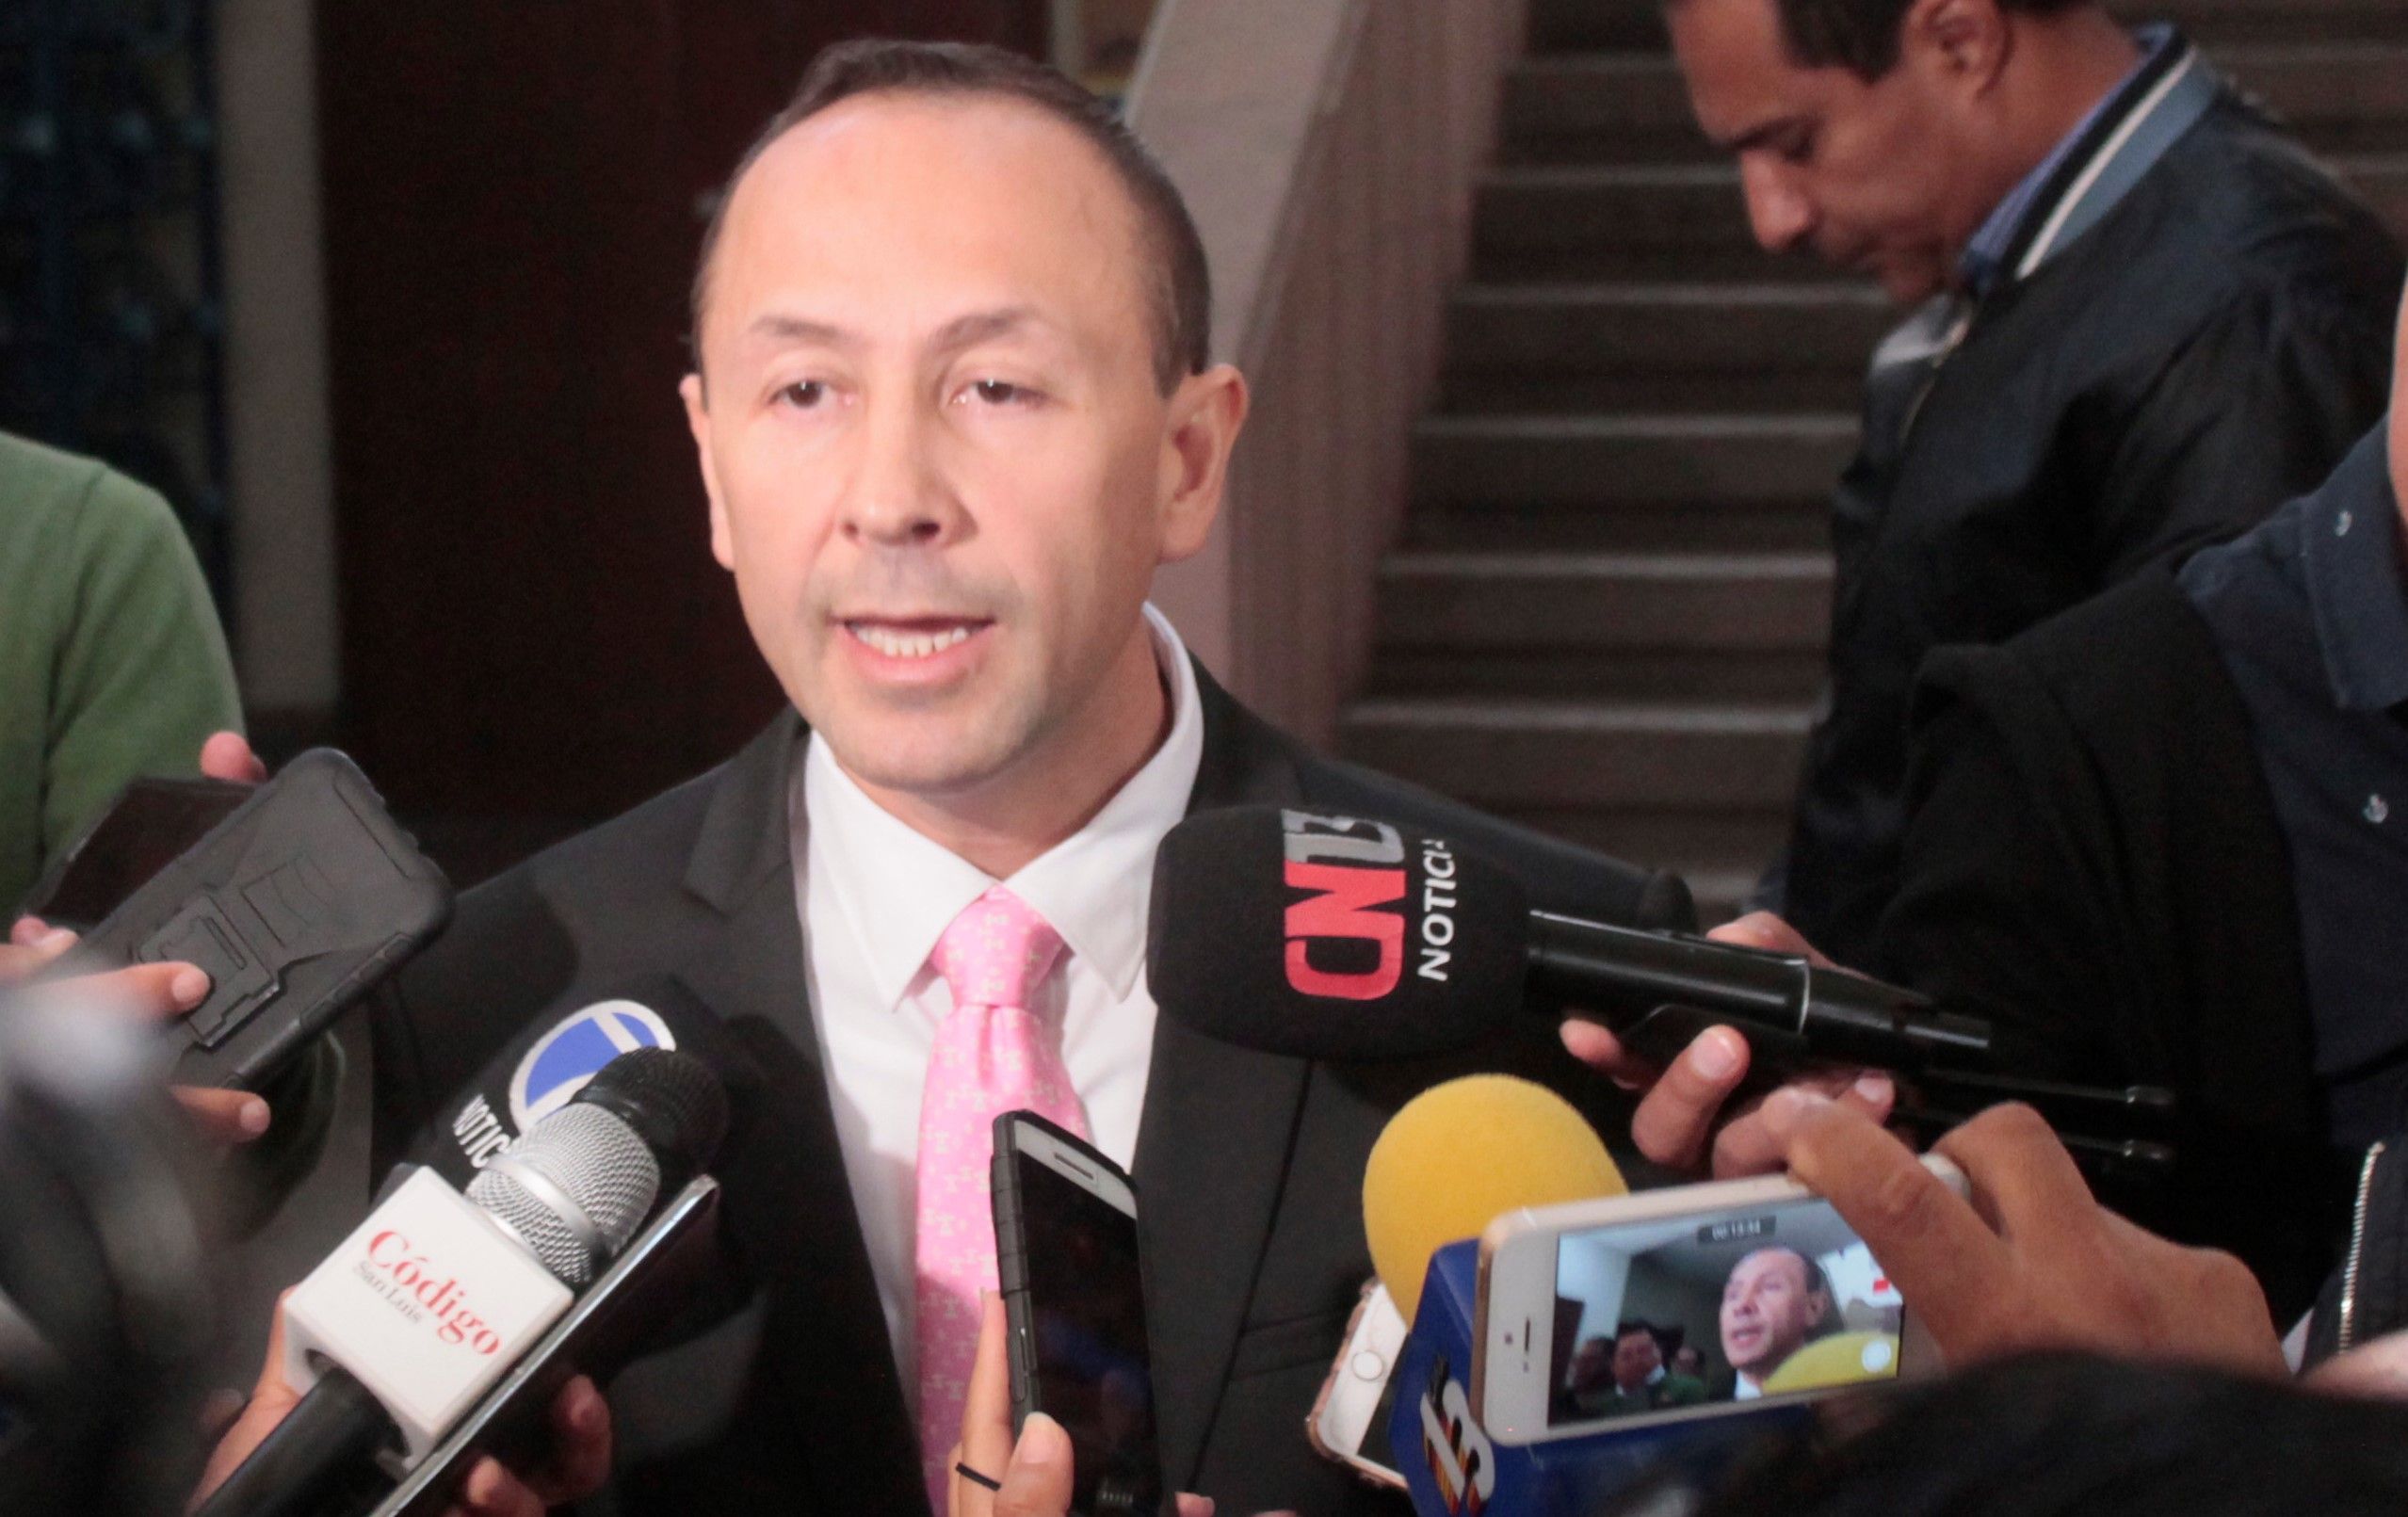  Juicio político contra Pineda se suma a las omisiones del gobernador: diputado